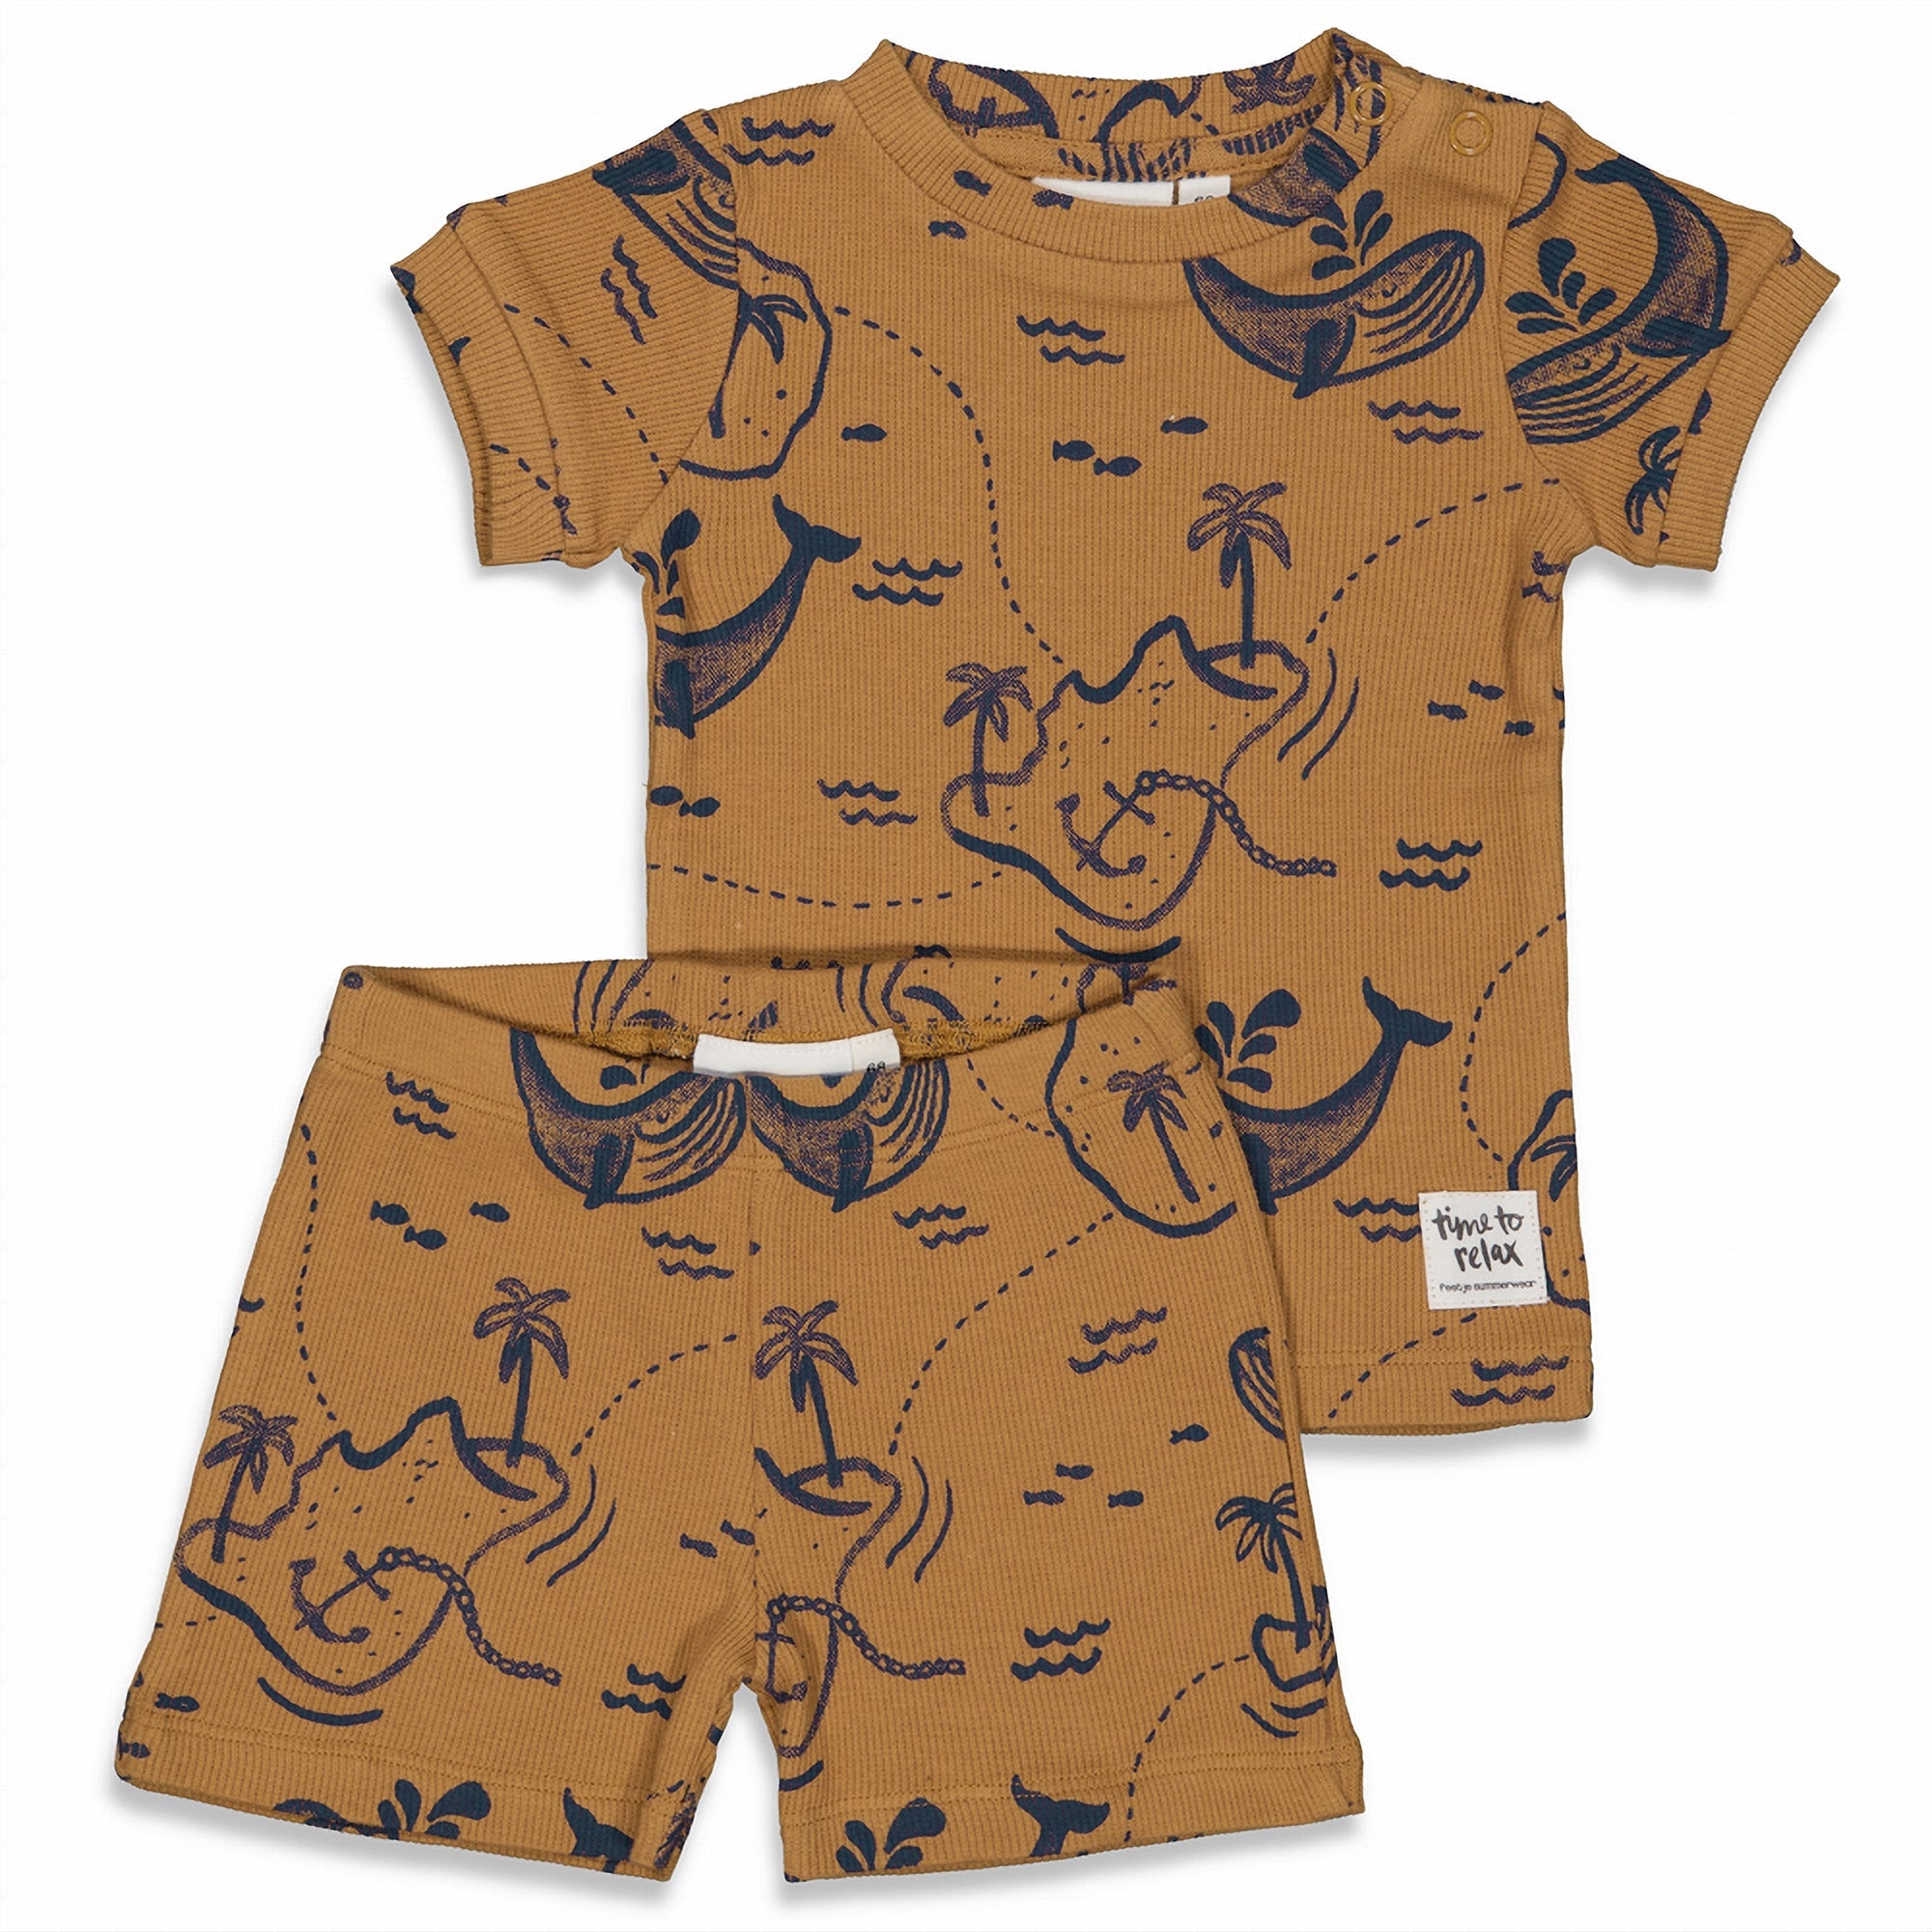 Jongens Wally Whale - Premium Summerwear by FEETJE van Feetje in de kleur Camel in maat 86.